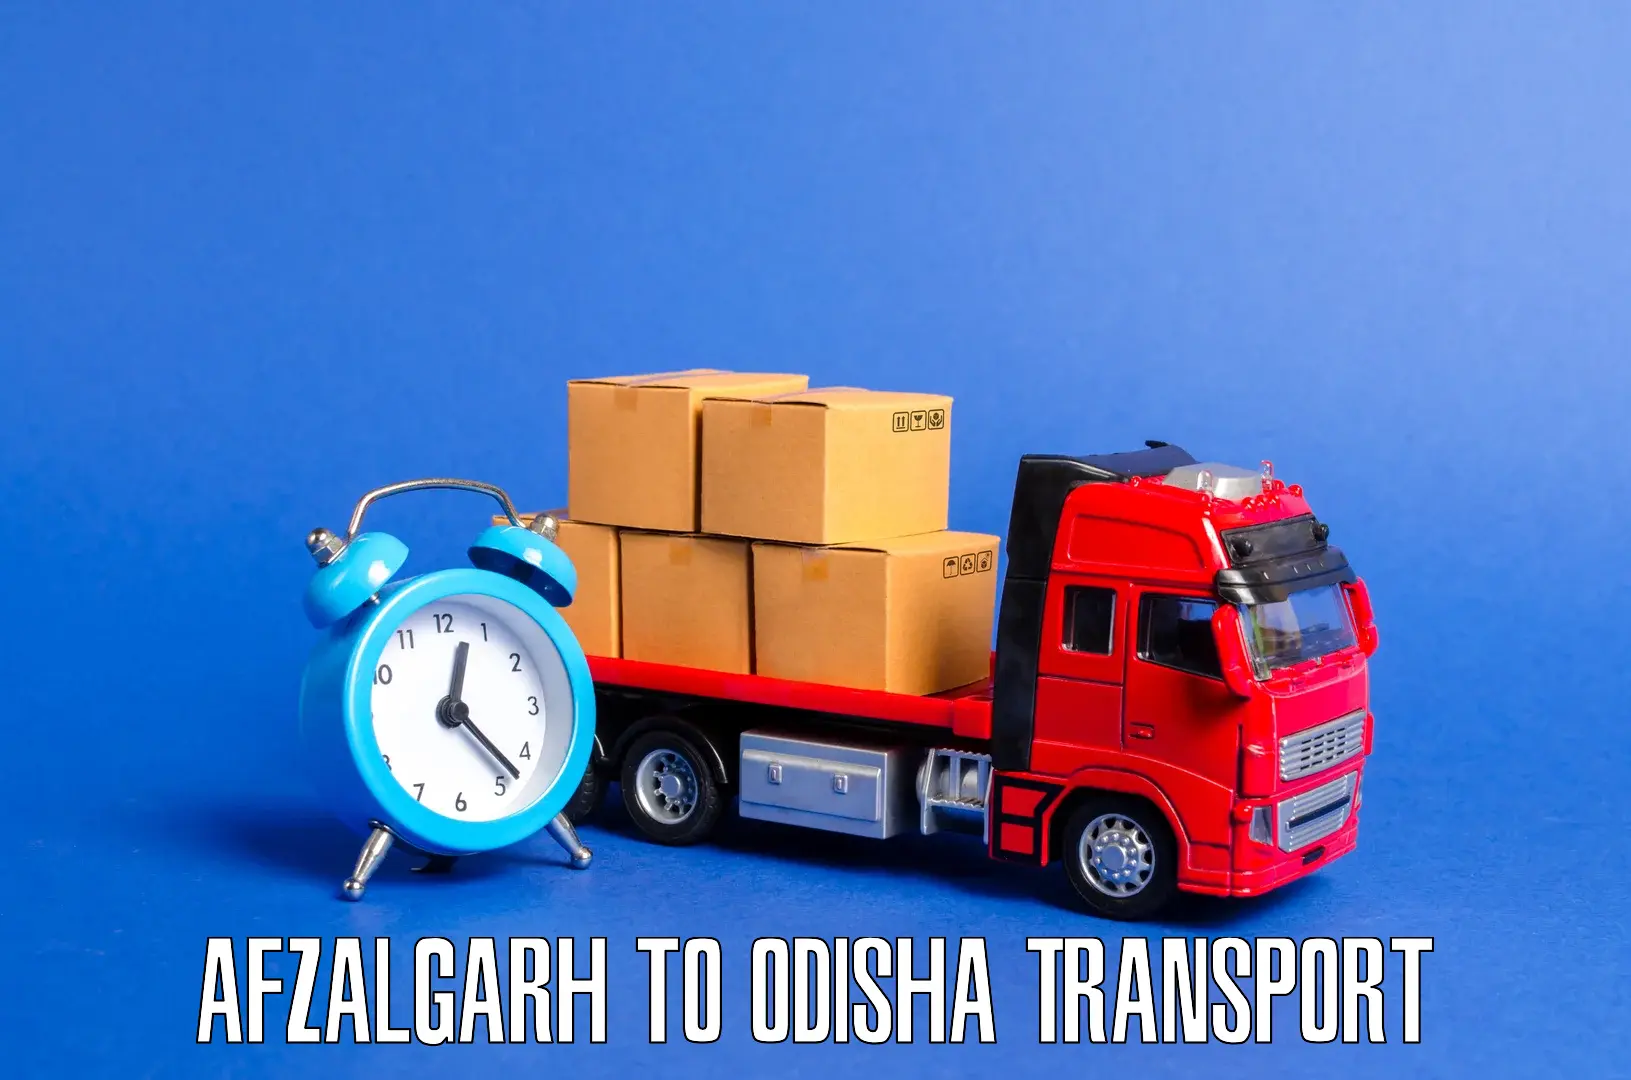 Lorry transport service Afzalgarh to Kesinga